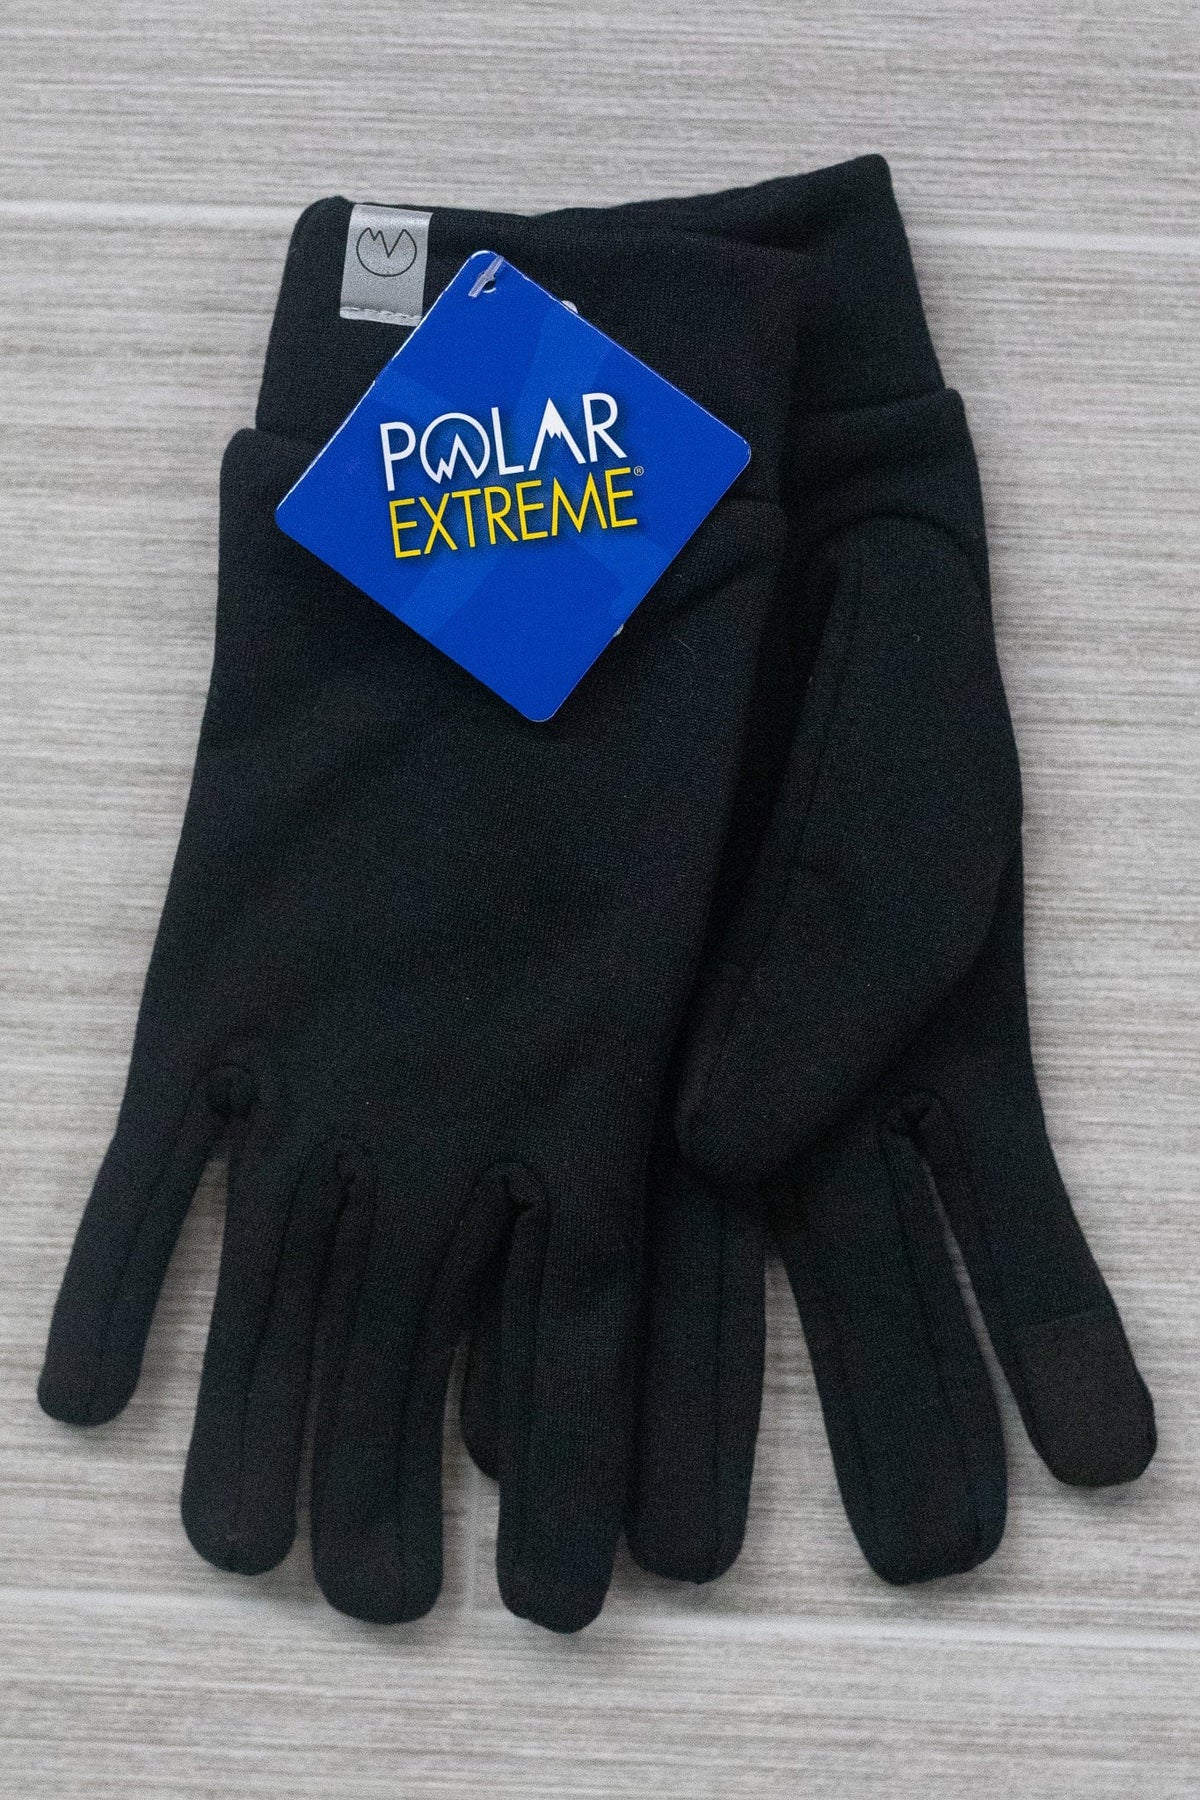 Polar Extreme Women's Tech Soft Shell Text Glove